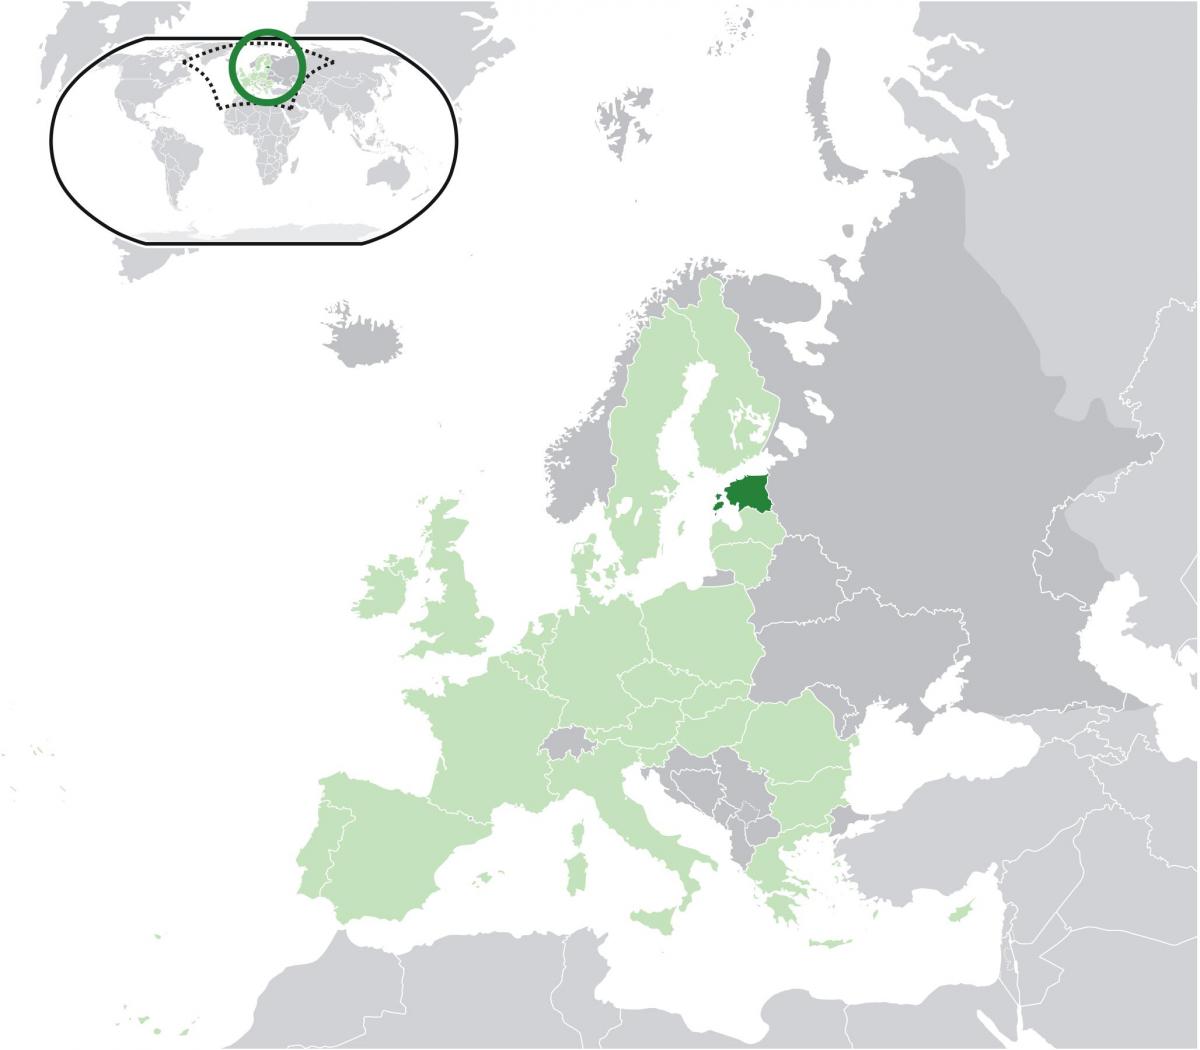 Естонія на карті Європи